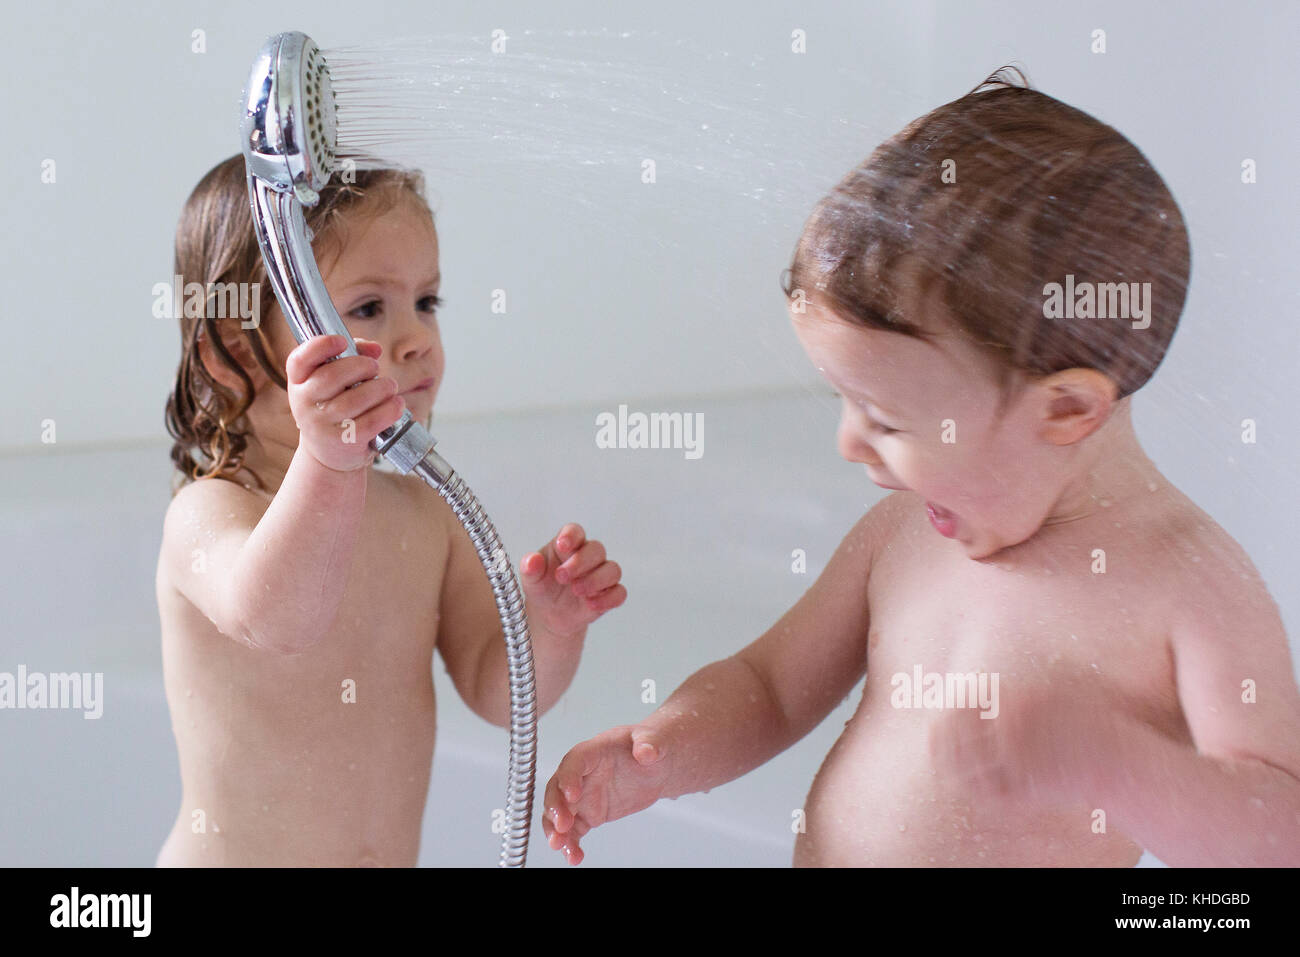 Kinder In Der Badewanne Spielen Stockfotografie Alamy